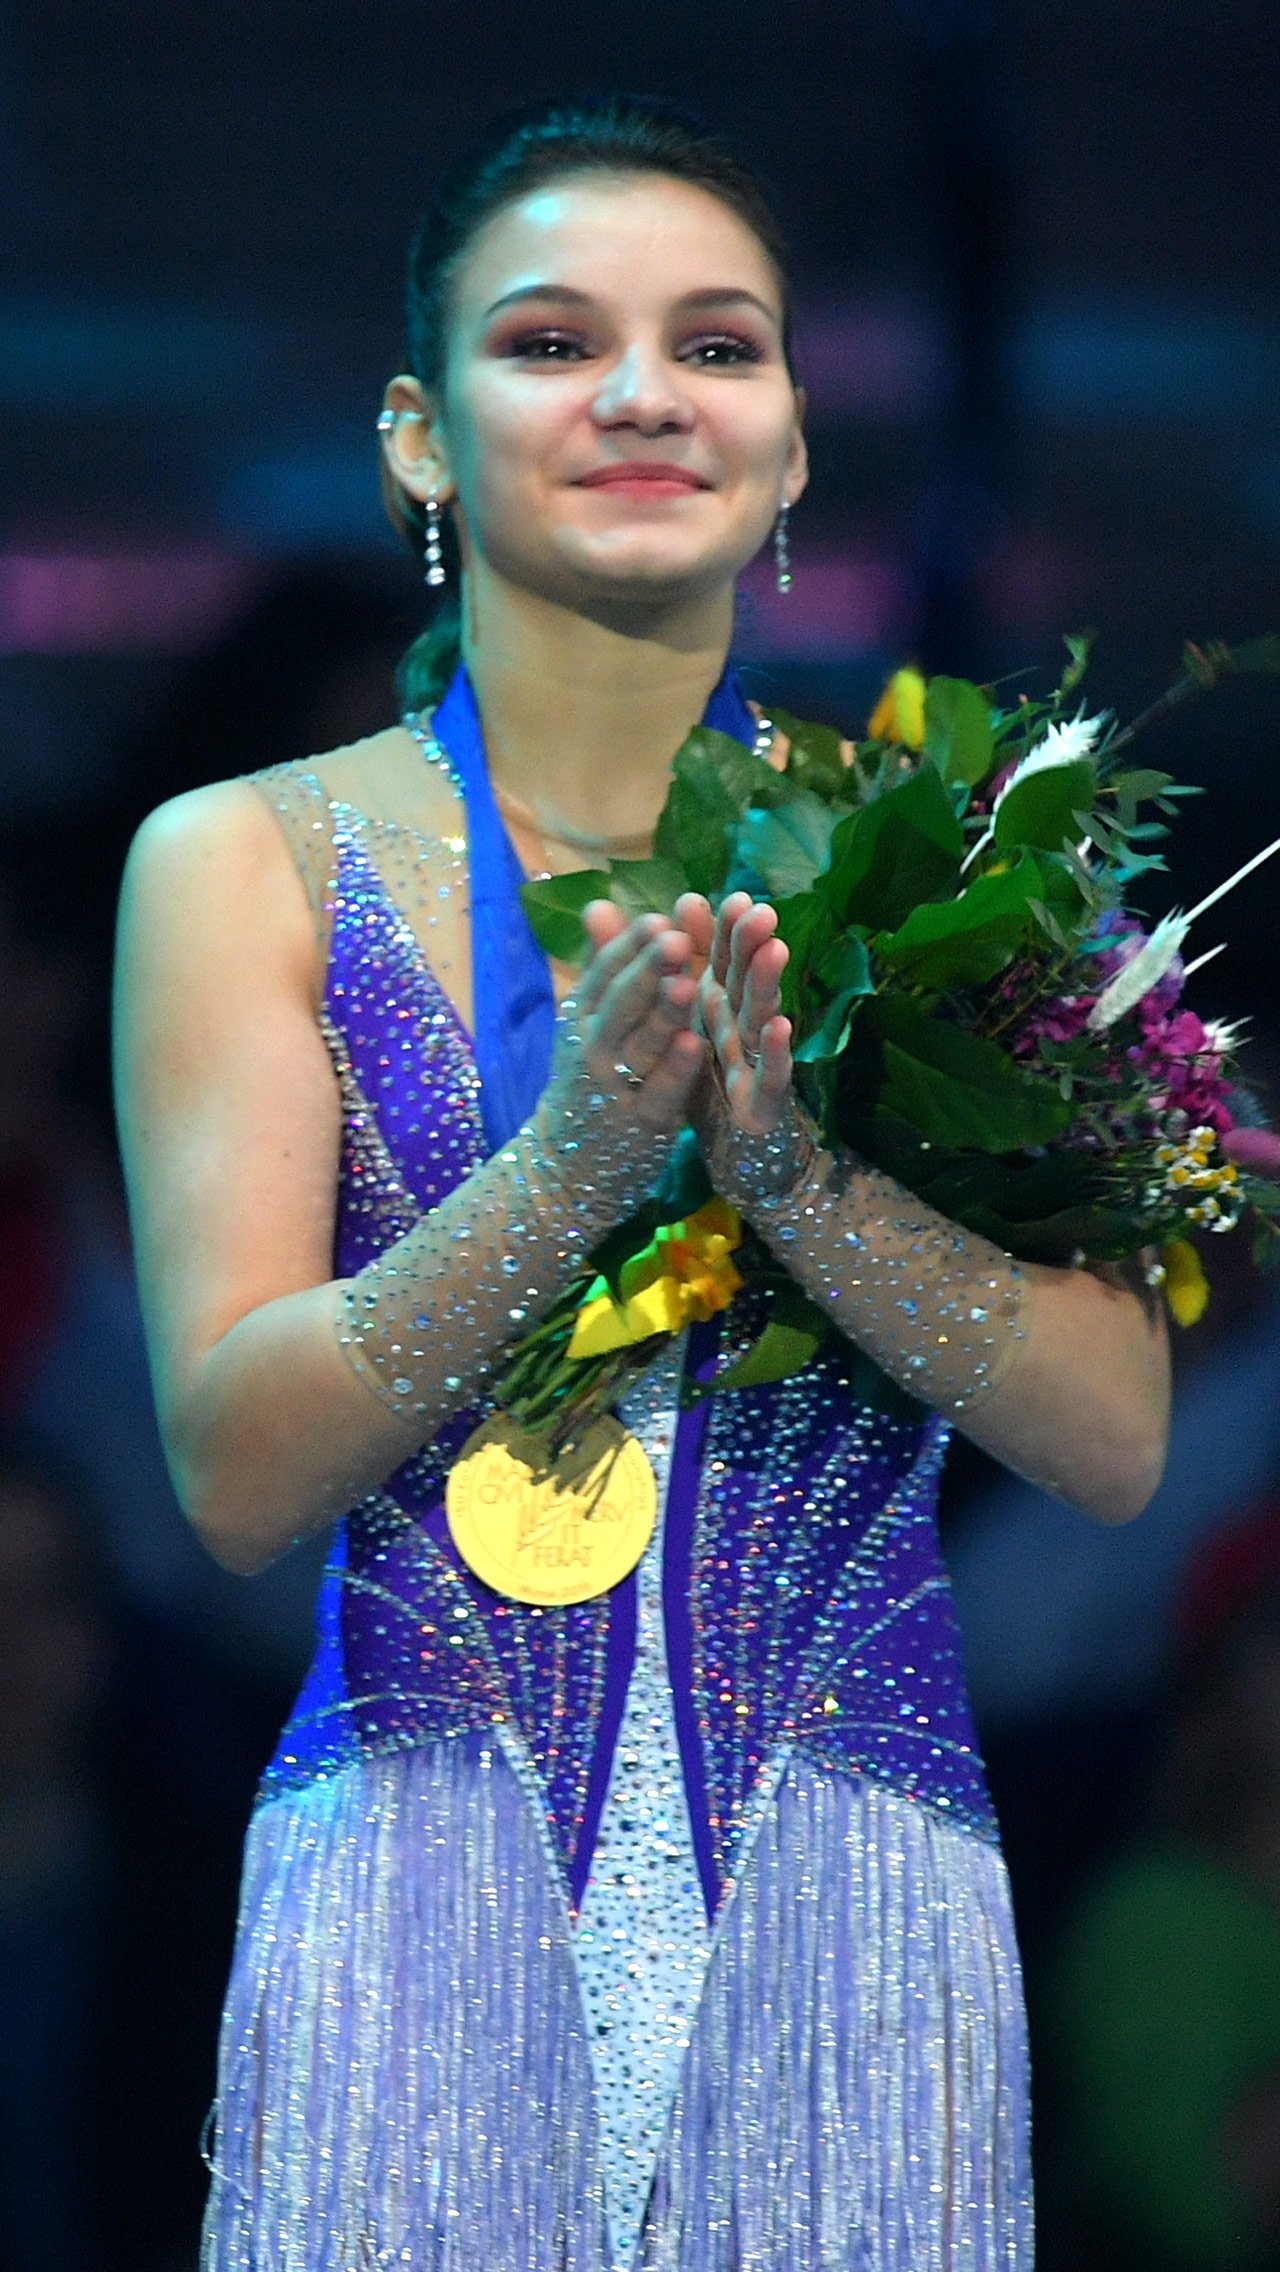 В 2019 году грянула настоящая сенсация! Титул чемпионки Европы завоевала малоизвестная широкой публике Софья Самодурова. Она остановила саму Загитову, только недавно выигравшую Олимпиаду.